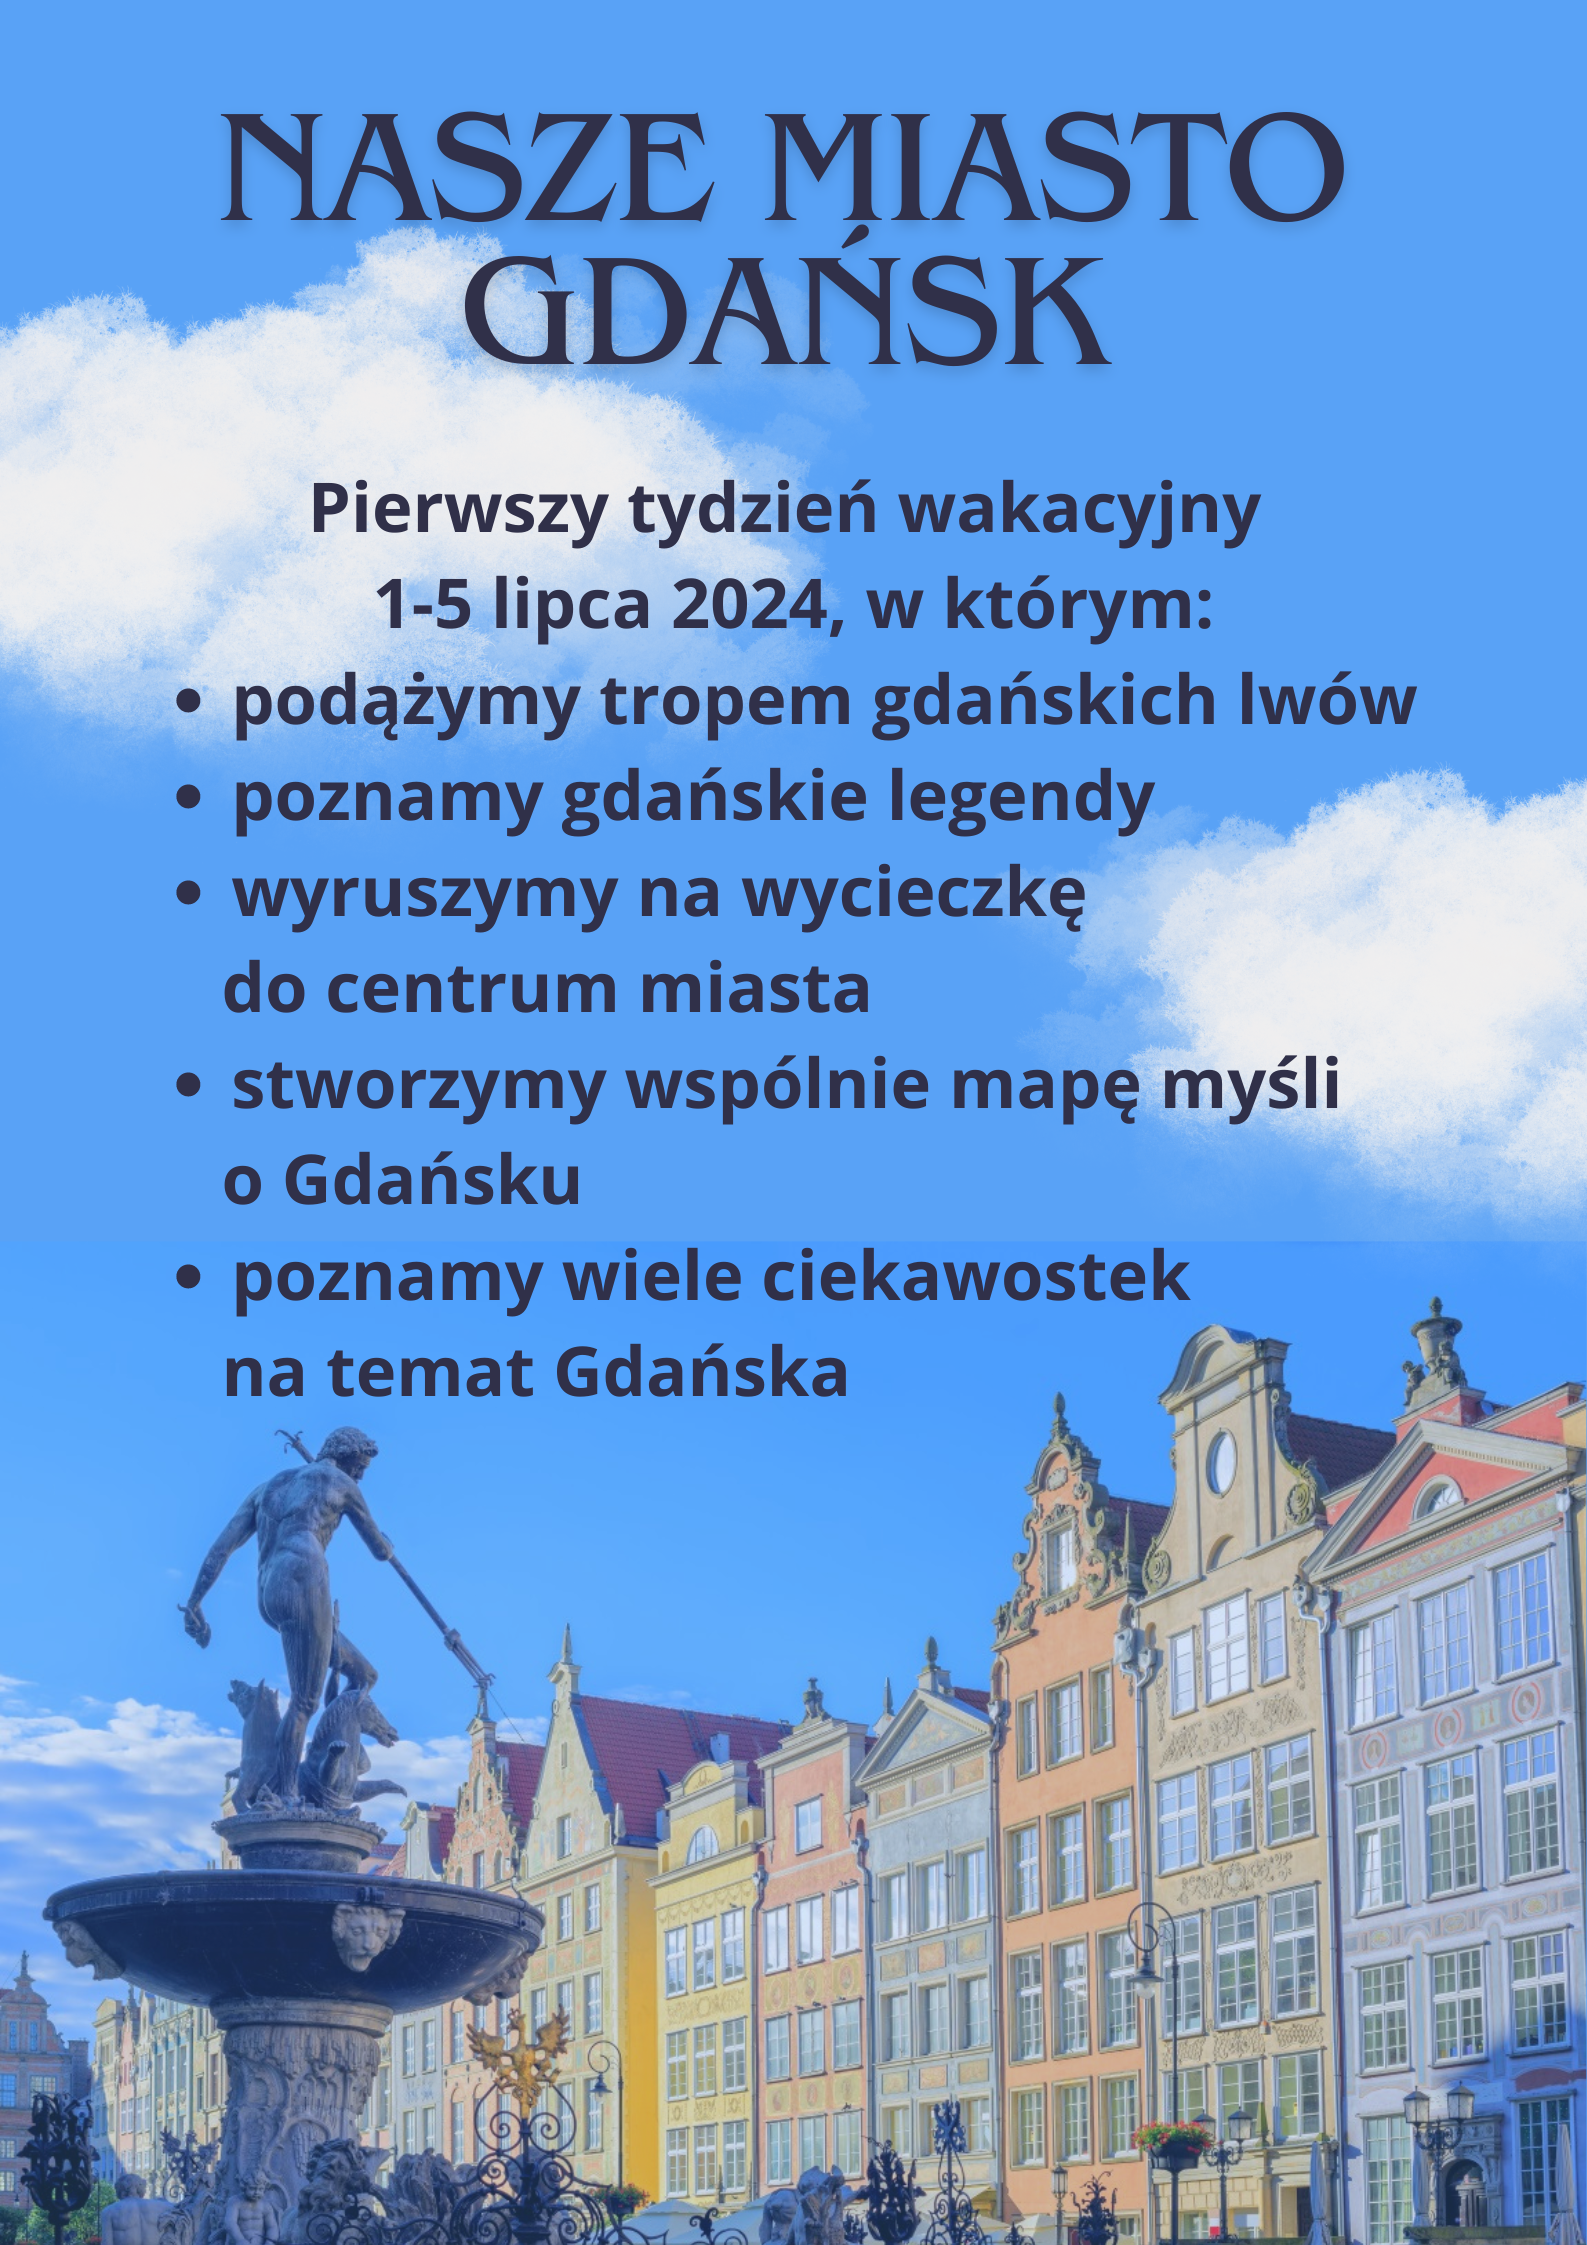 Nasze miasto Gdańsk 2024